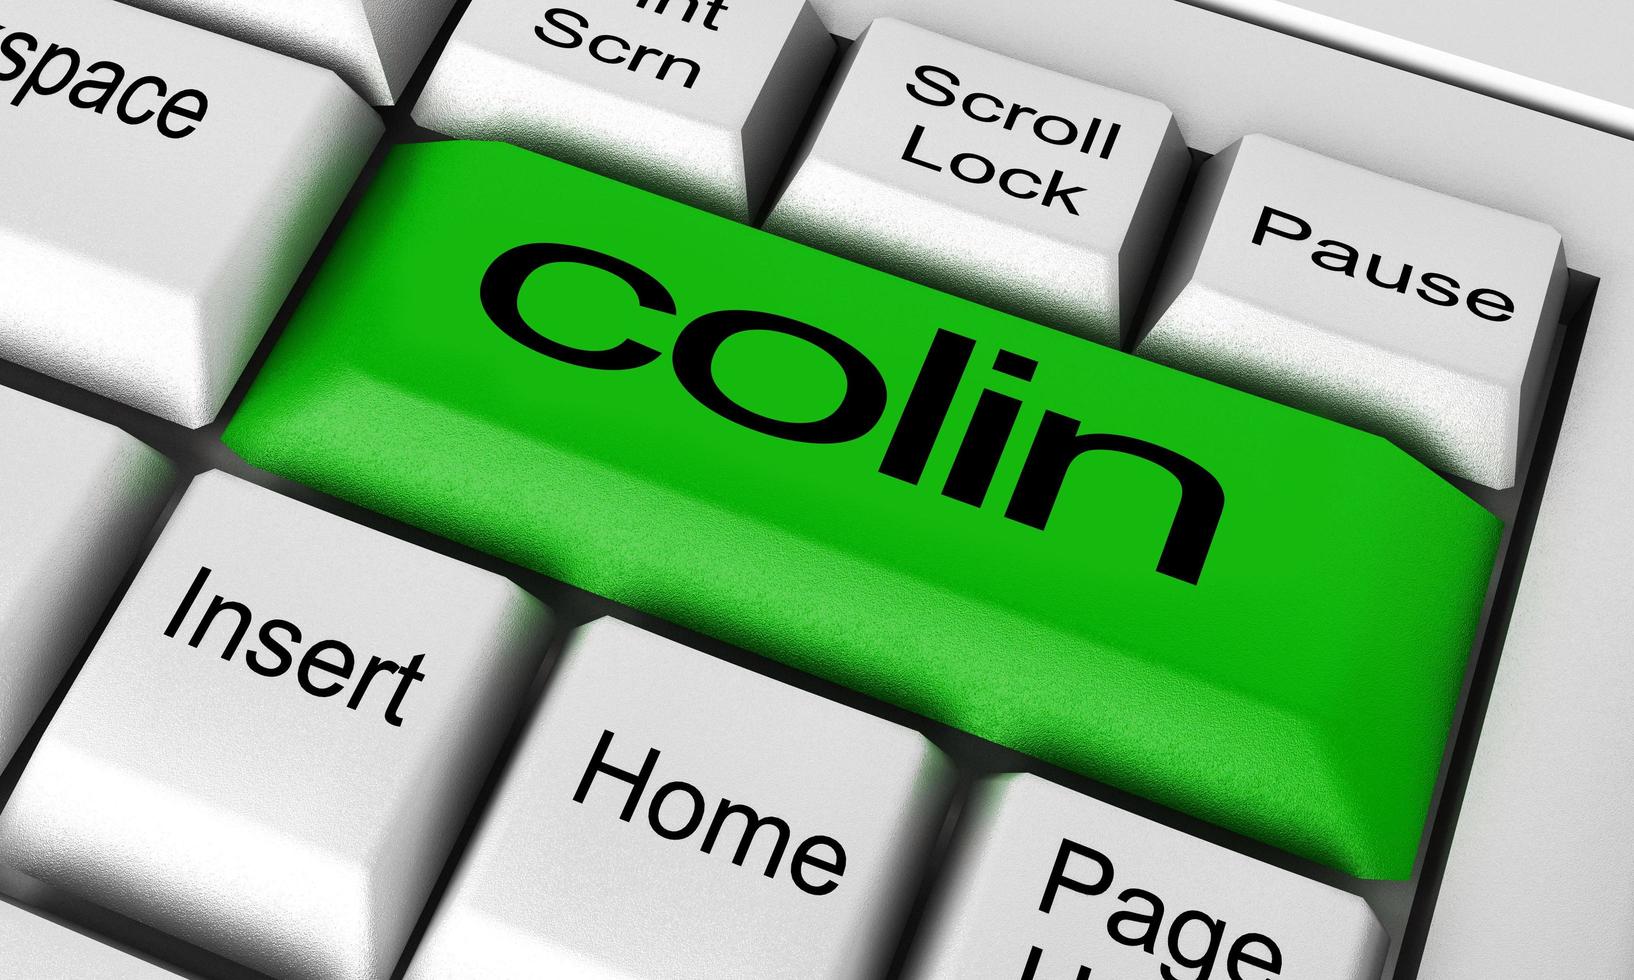 Colin-Wort auf der Tastaturtaste foto